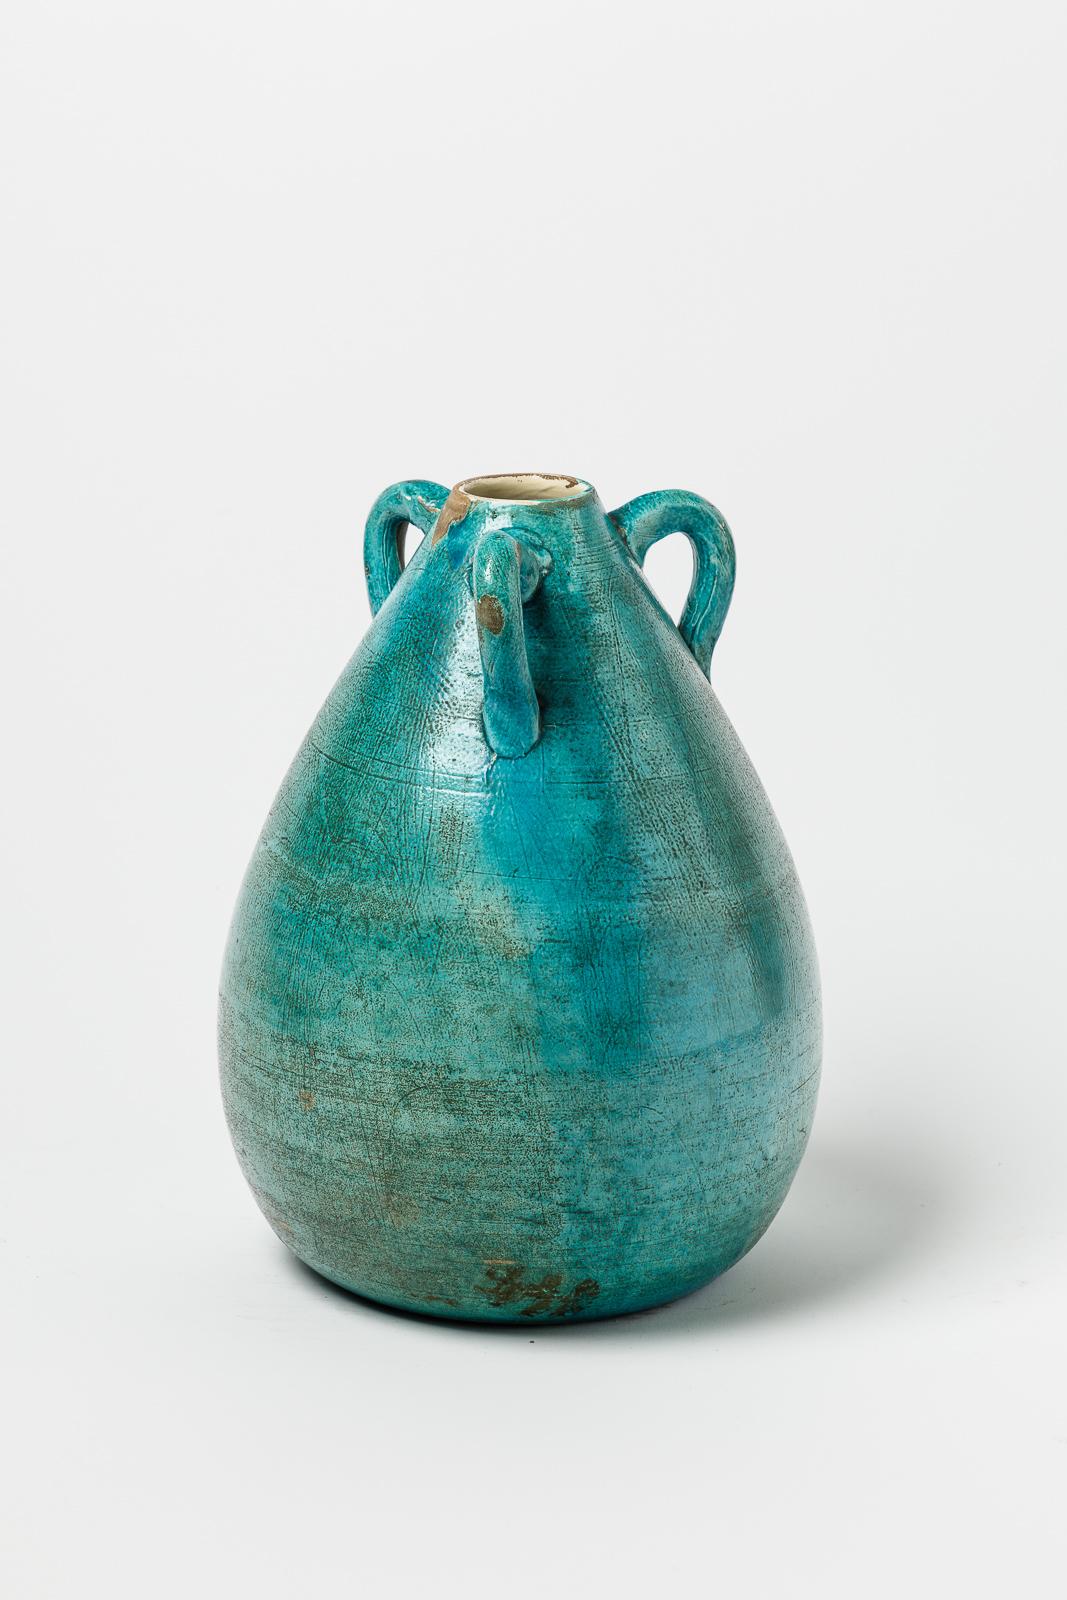 Nach dem Vorbild von Jean Besnard

Original Art Deco Keramikvase

Realisiert um 1930

Blaugrüne keramische Glasurfarbe

Maße: Höhe 29 cm

Groß 20 cm.